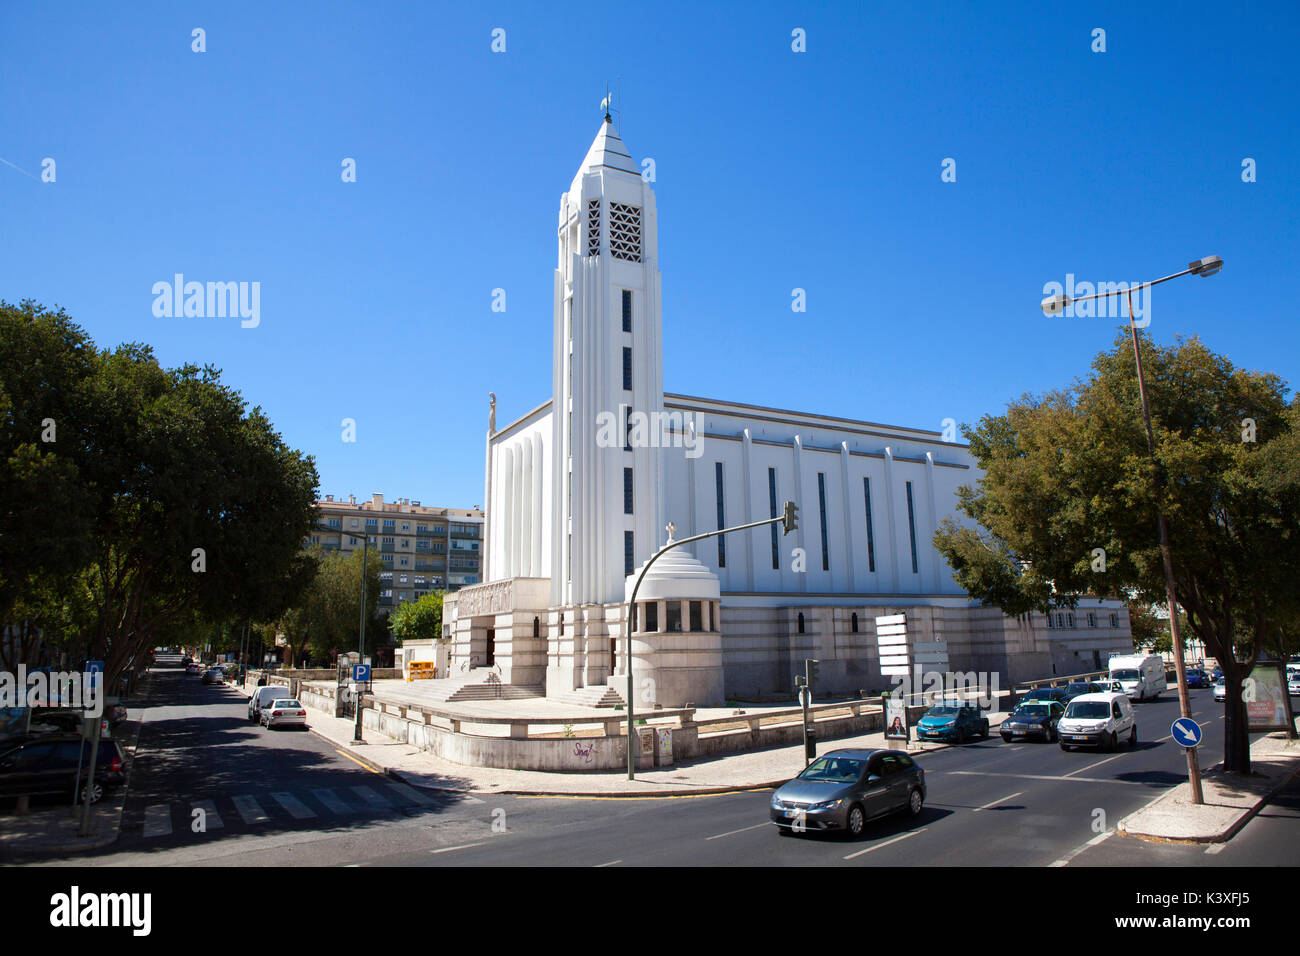 Lisbona, la capitale e la città più grande del Portogallo nel quartiere di Alfama sulla costa atlantica in Europa occidentale Foto Stock